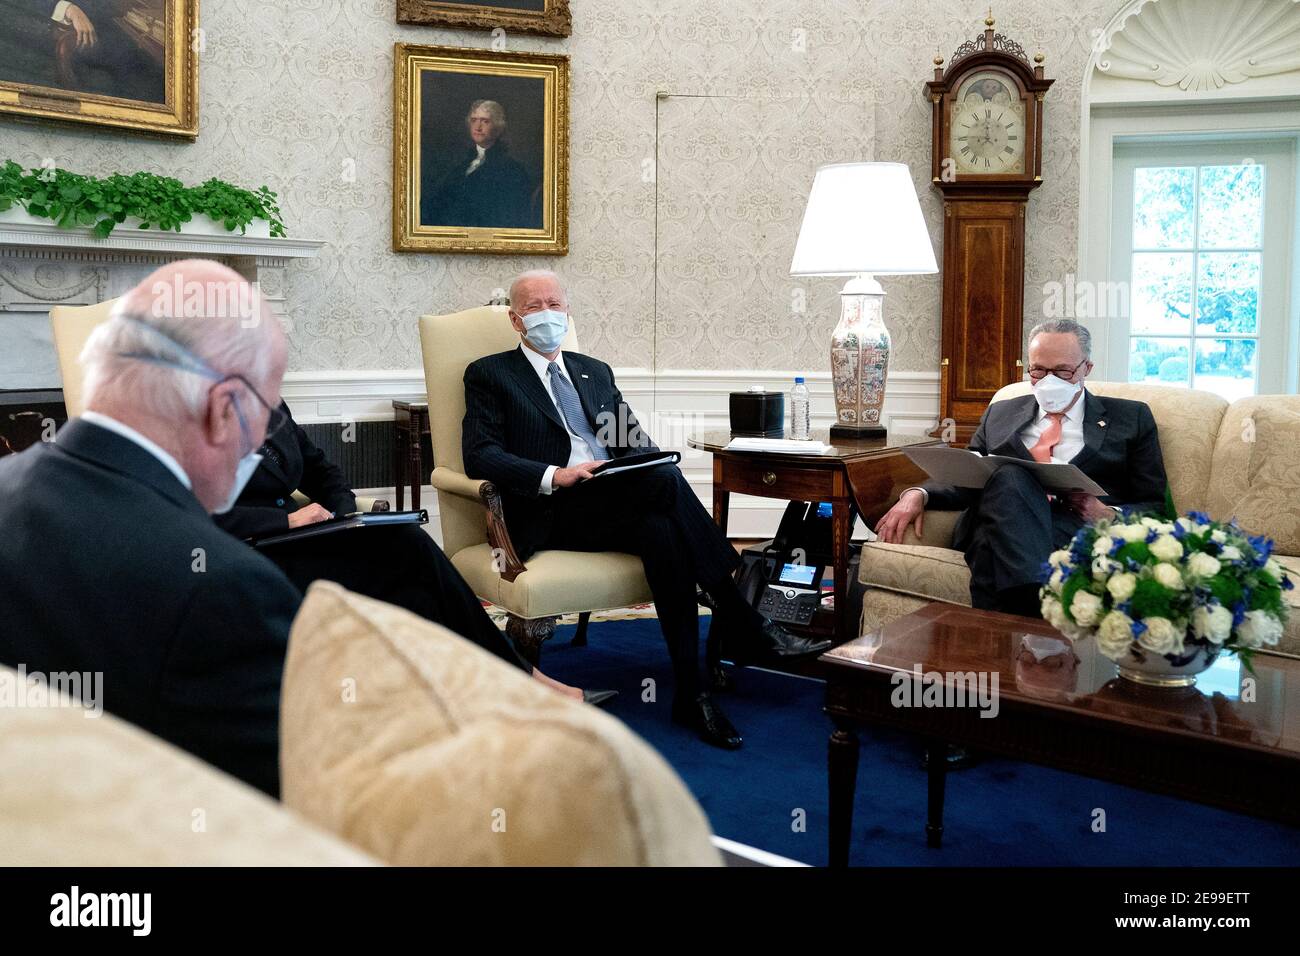 El presidente Joe Biden, del centro, lleva una máscara protectora mientras se reúne con el vicepresidente de EE.UU. Kamala Harris, no en la foto, el líder de la mayoría del Senado Chuck Schumer (D-N.Y.), derecha, y otros senadores demócratas para discutir el Plan de Rescate Americano en la Oficina Oval de la Casa Blanca en Washington el miércoles 3 de febrero de 2021. Crédito: Stefani Reynolds/Pool a través de CNP /MediaPunch Foto de stock